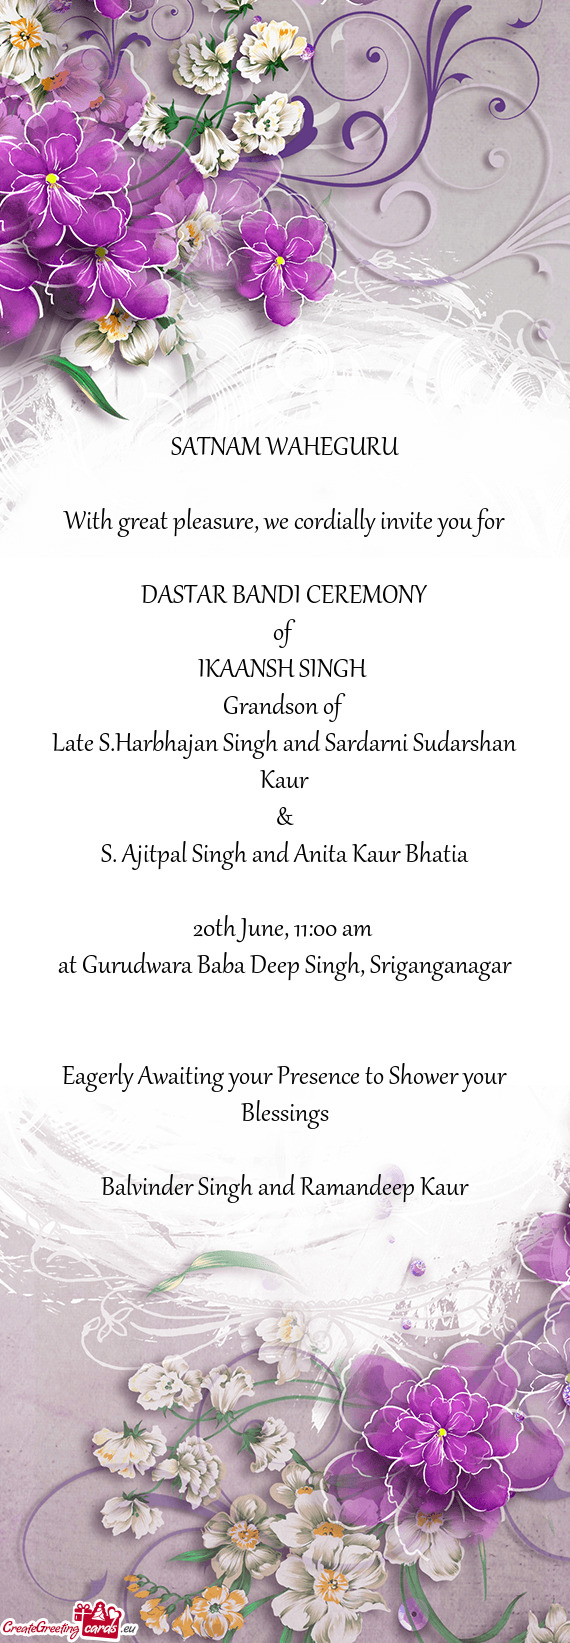 Late S.Harbhajan Singh and Sardarni Sudarshan Kaur